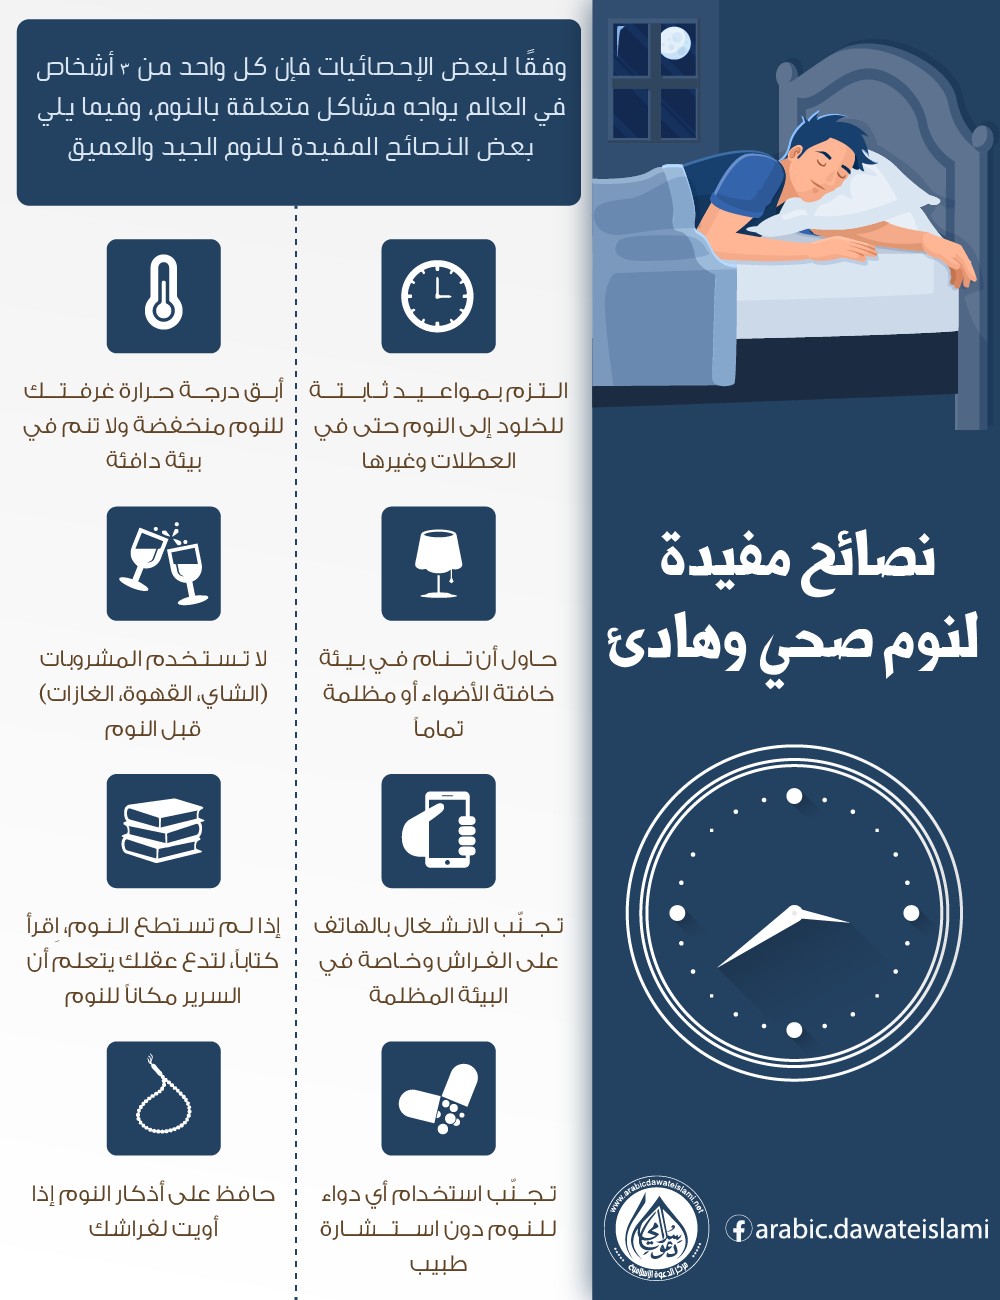 نصائح مفيدة لنوم صحي وهادئ